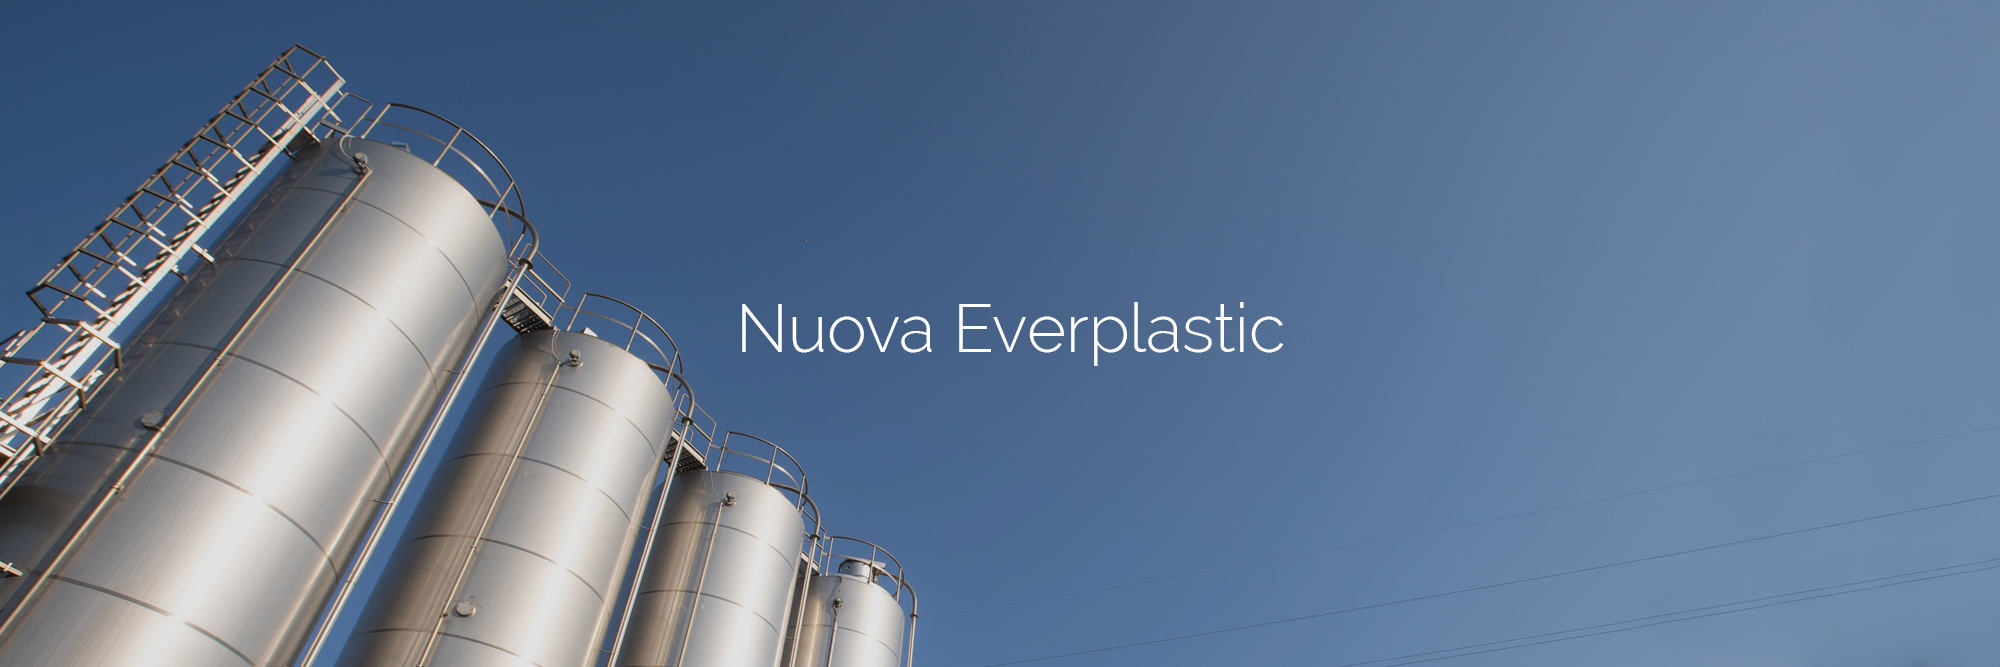 Realizzazione sito web - Nuova Everplastic